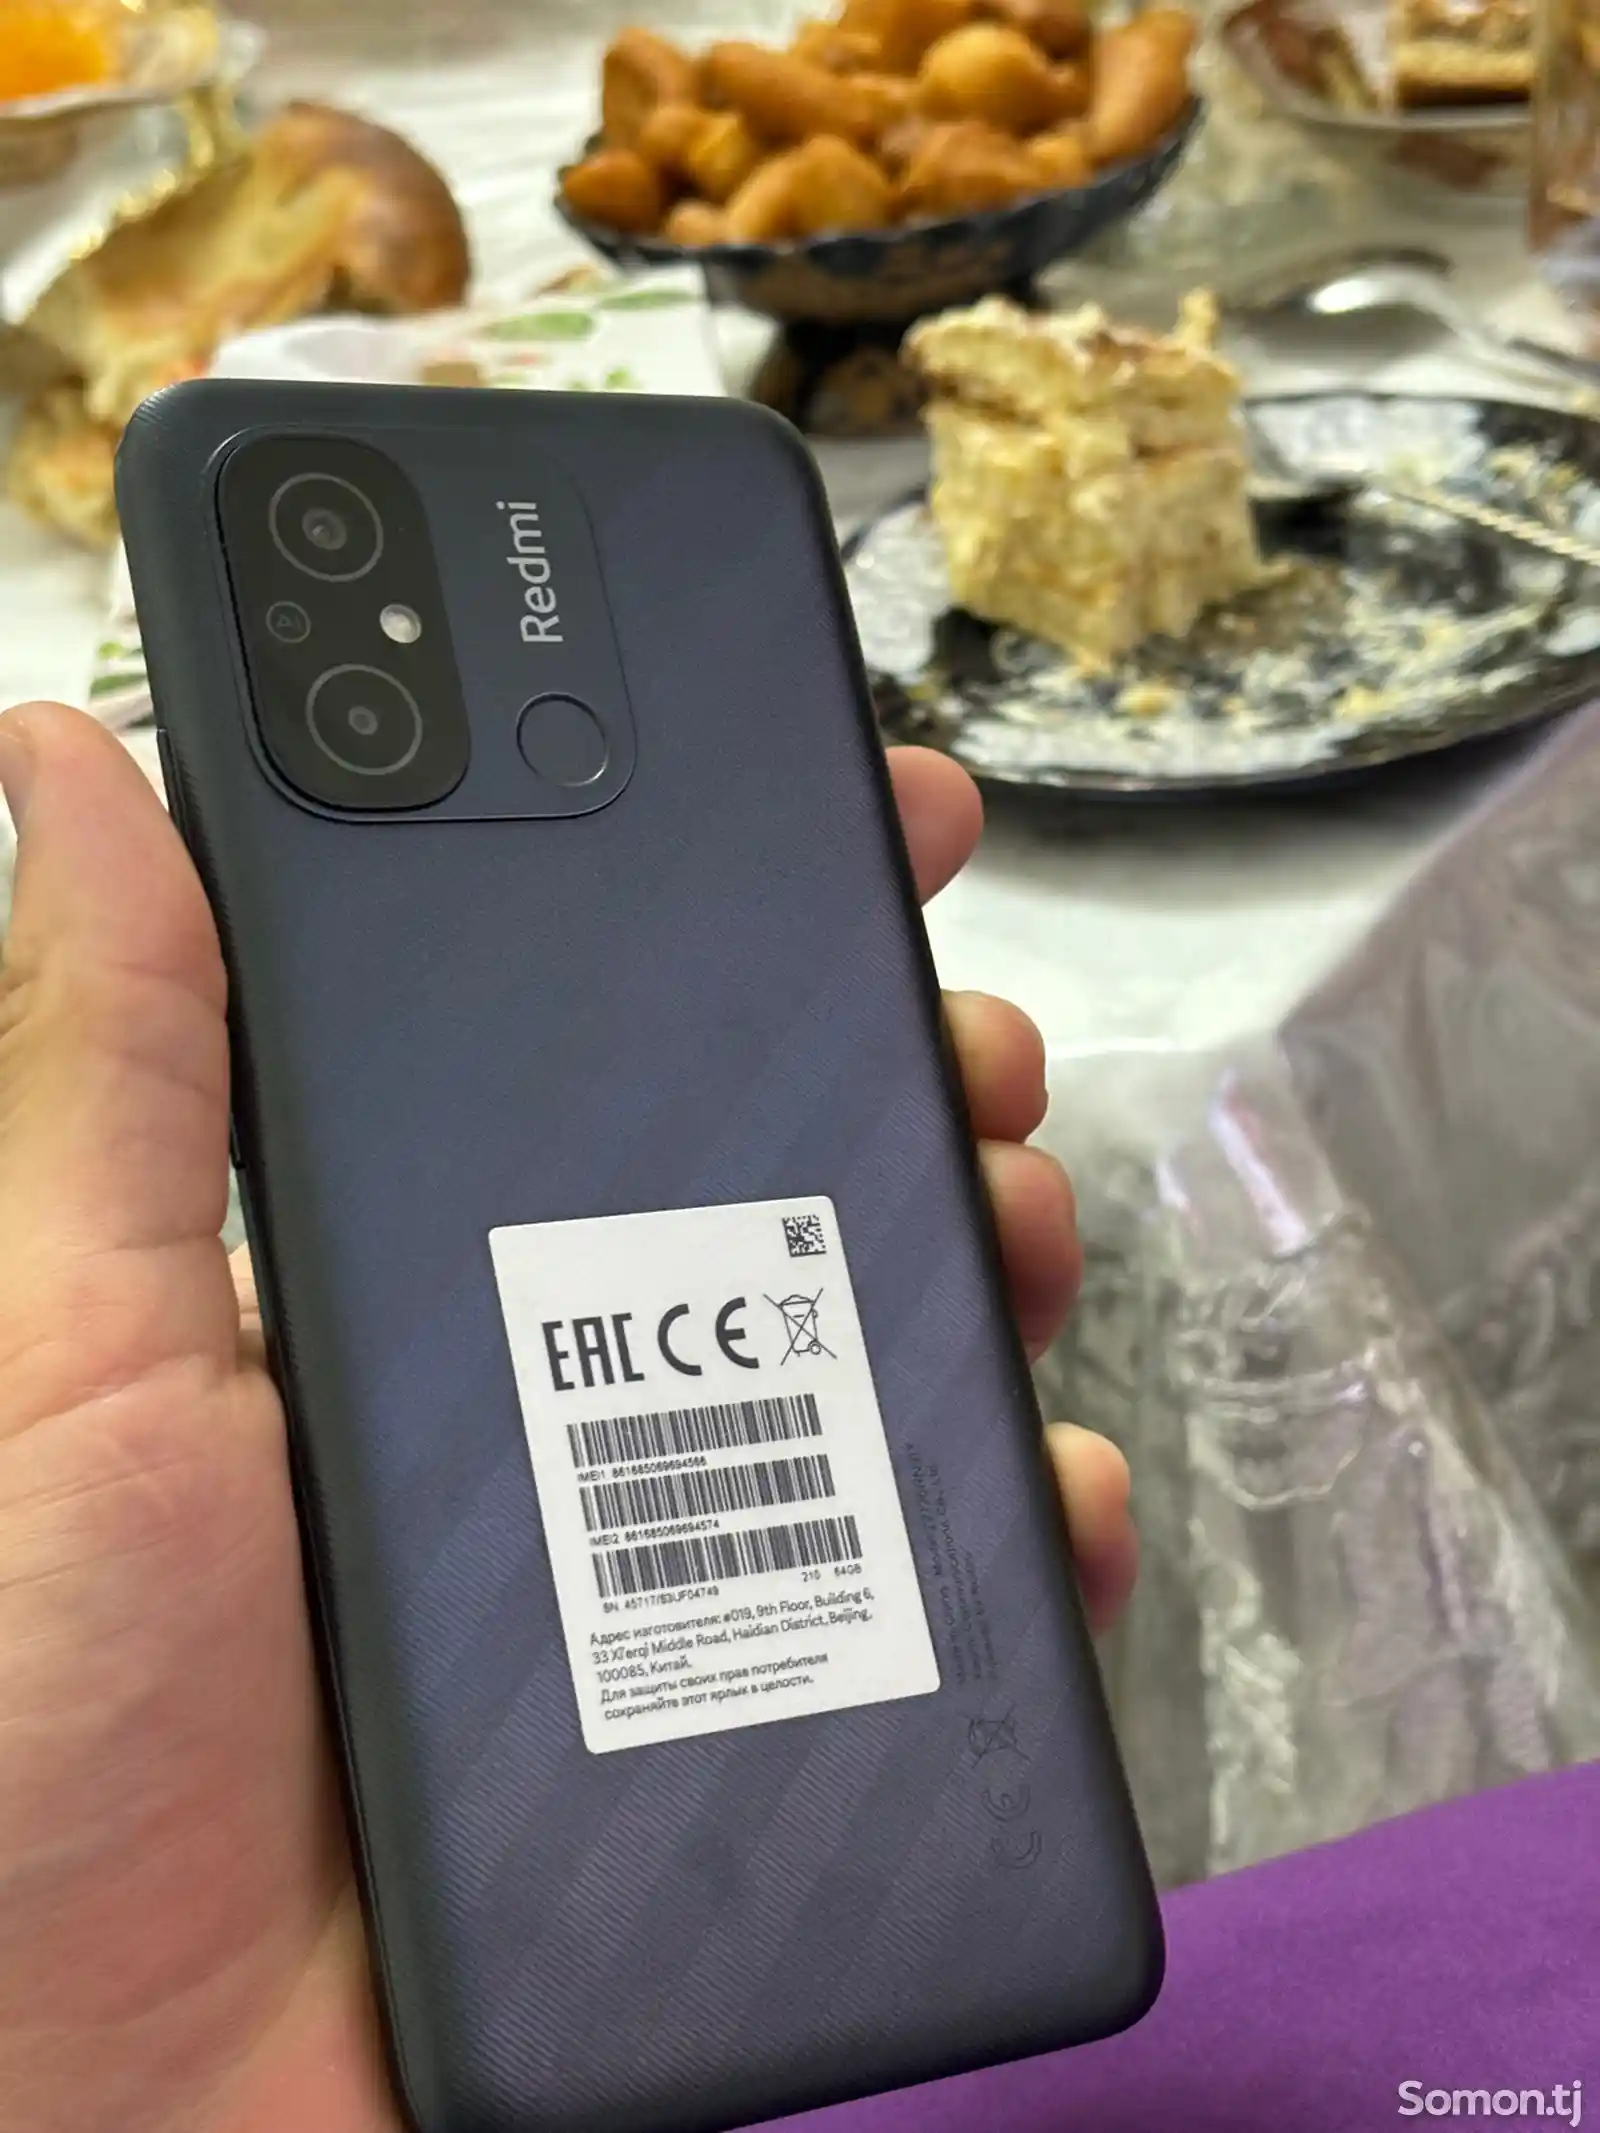 Телефон Xiaomi Redmi-4